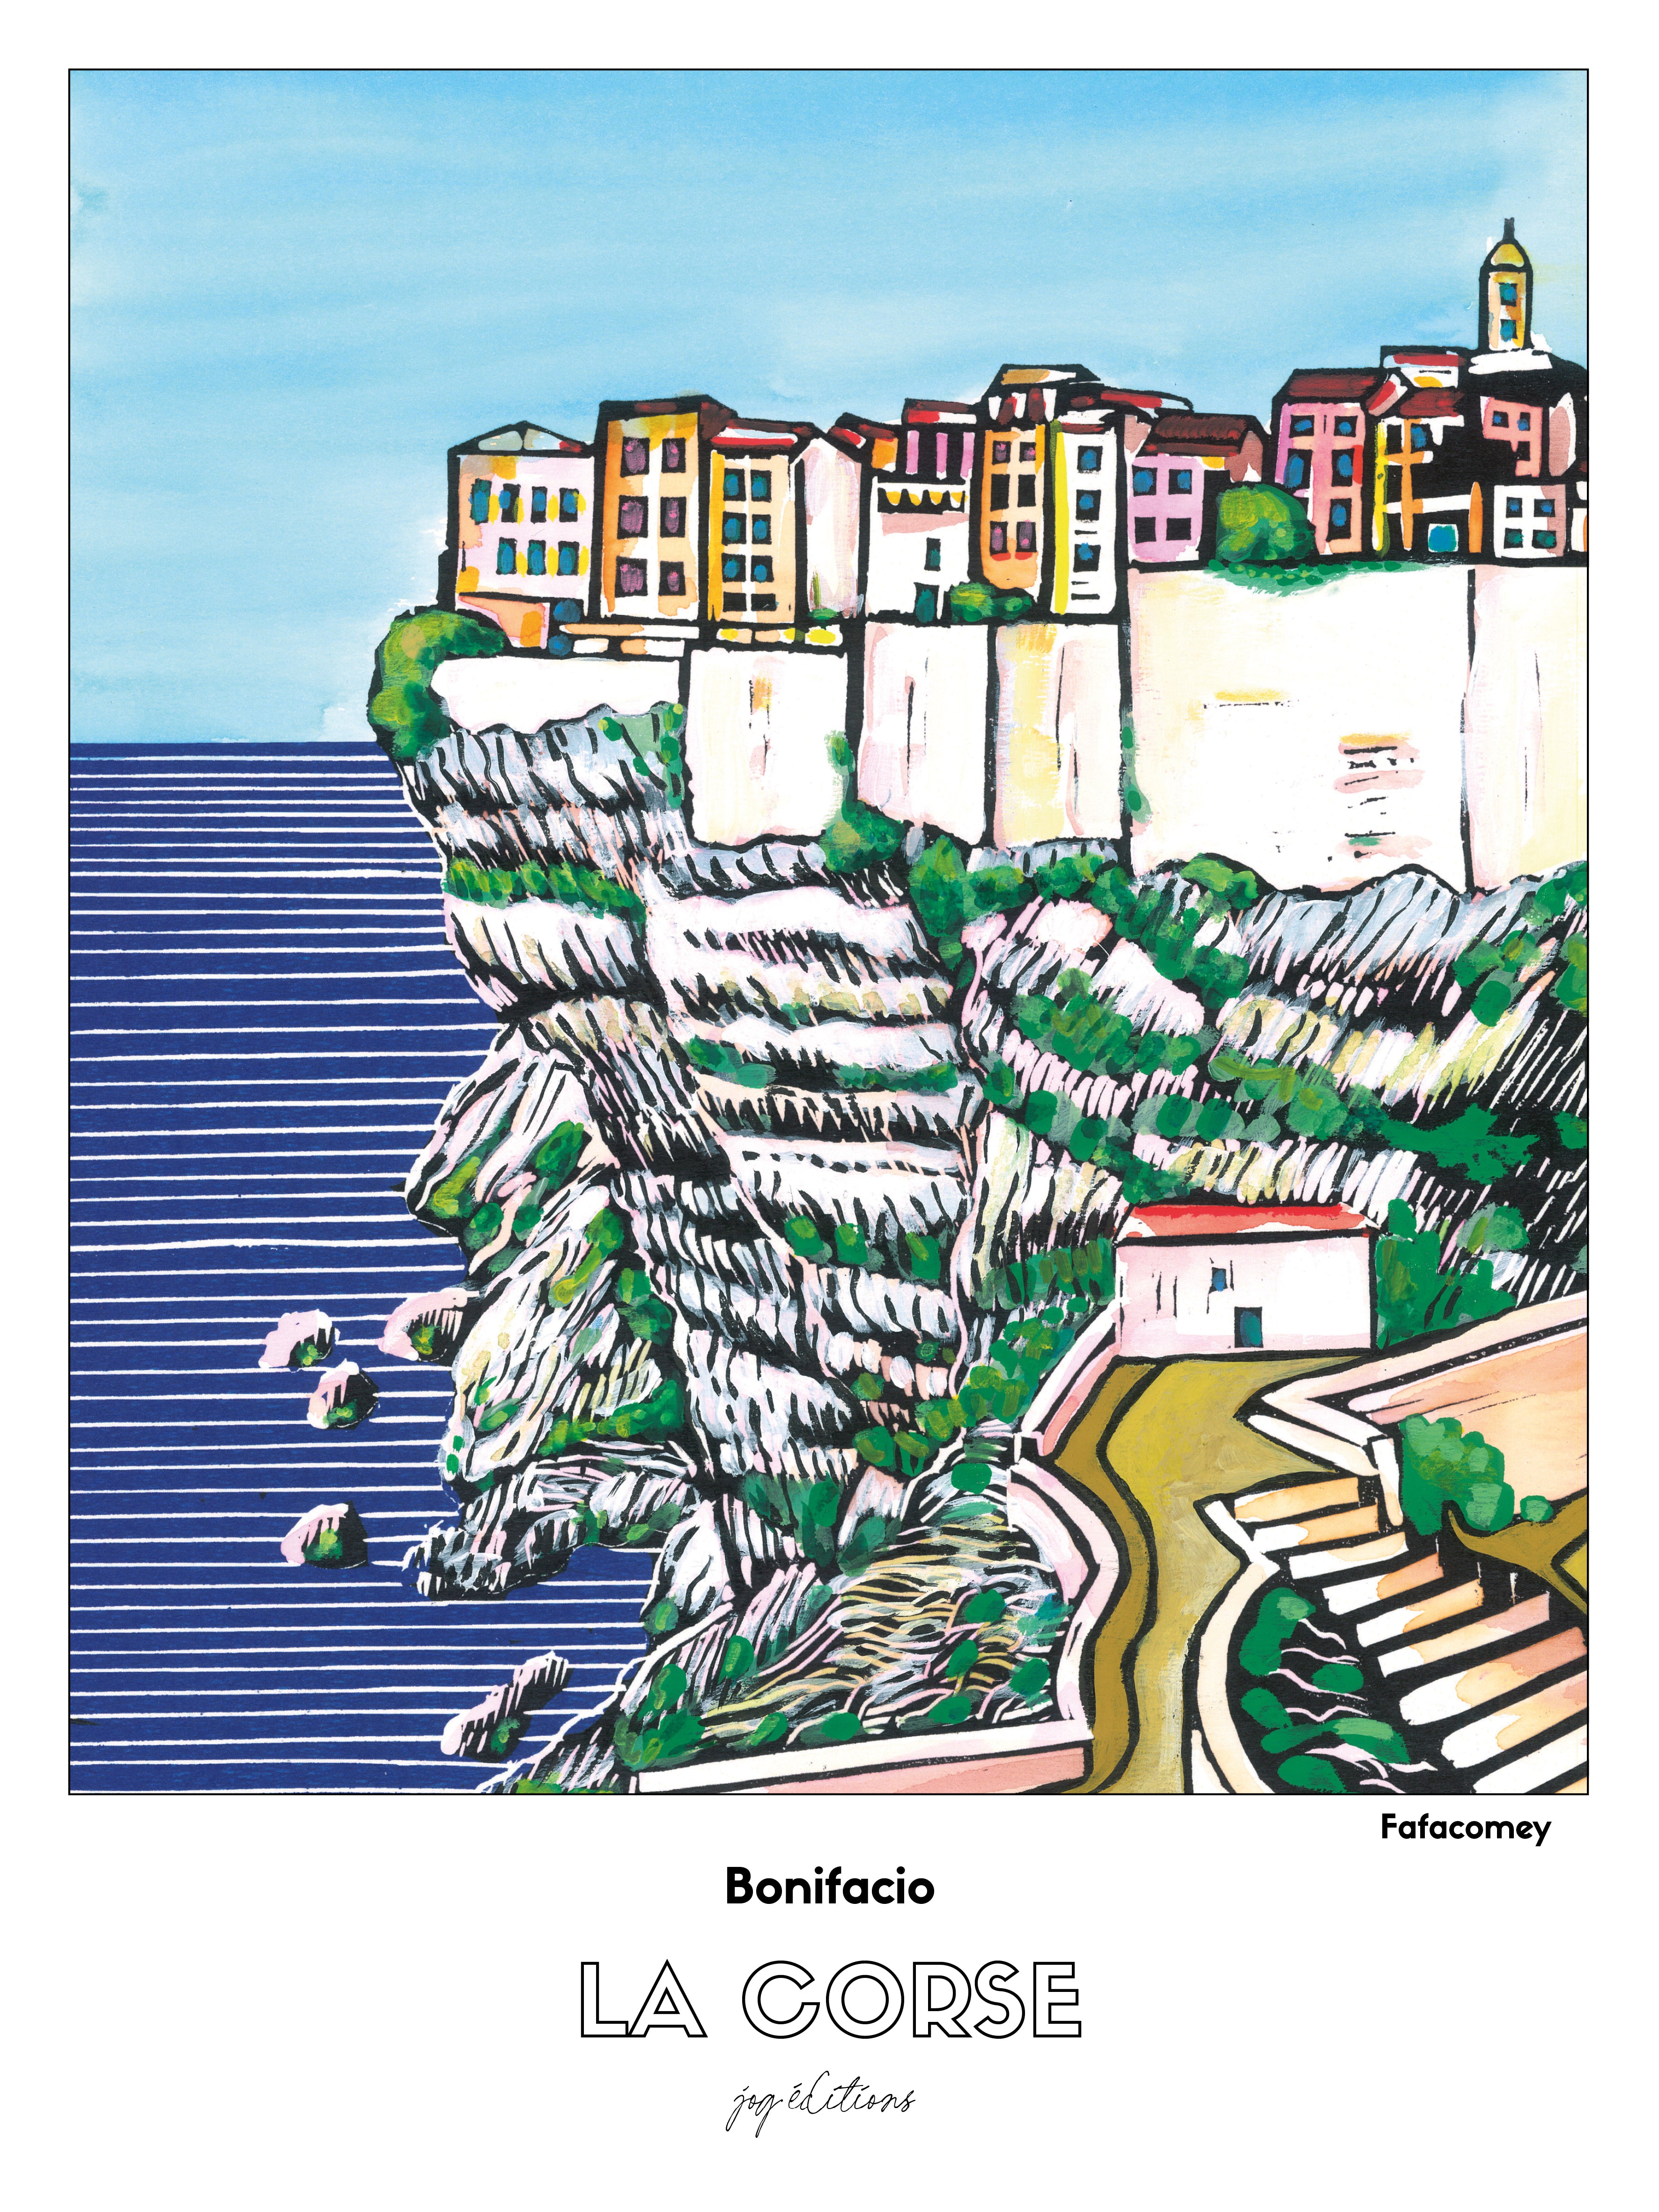 Affiche - Fafacomey - Corse - Bonifacio